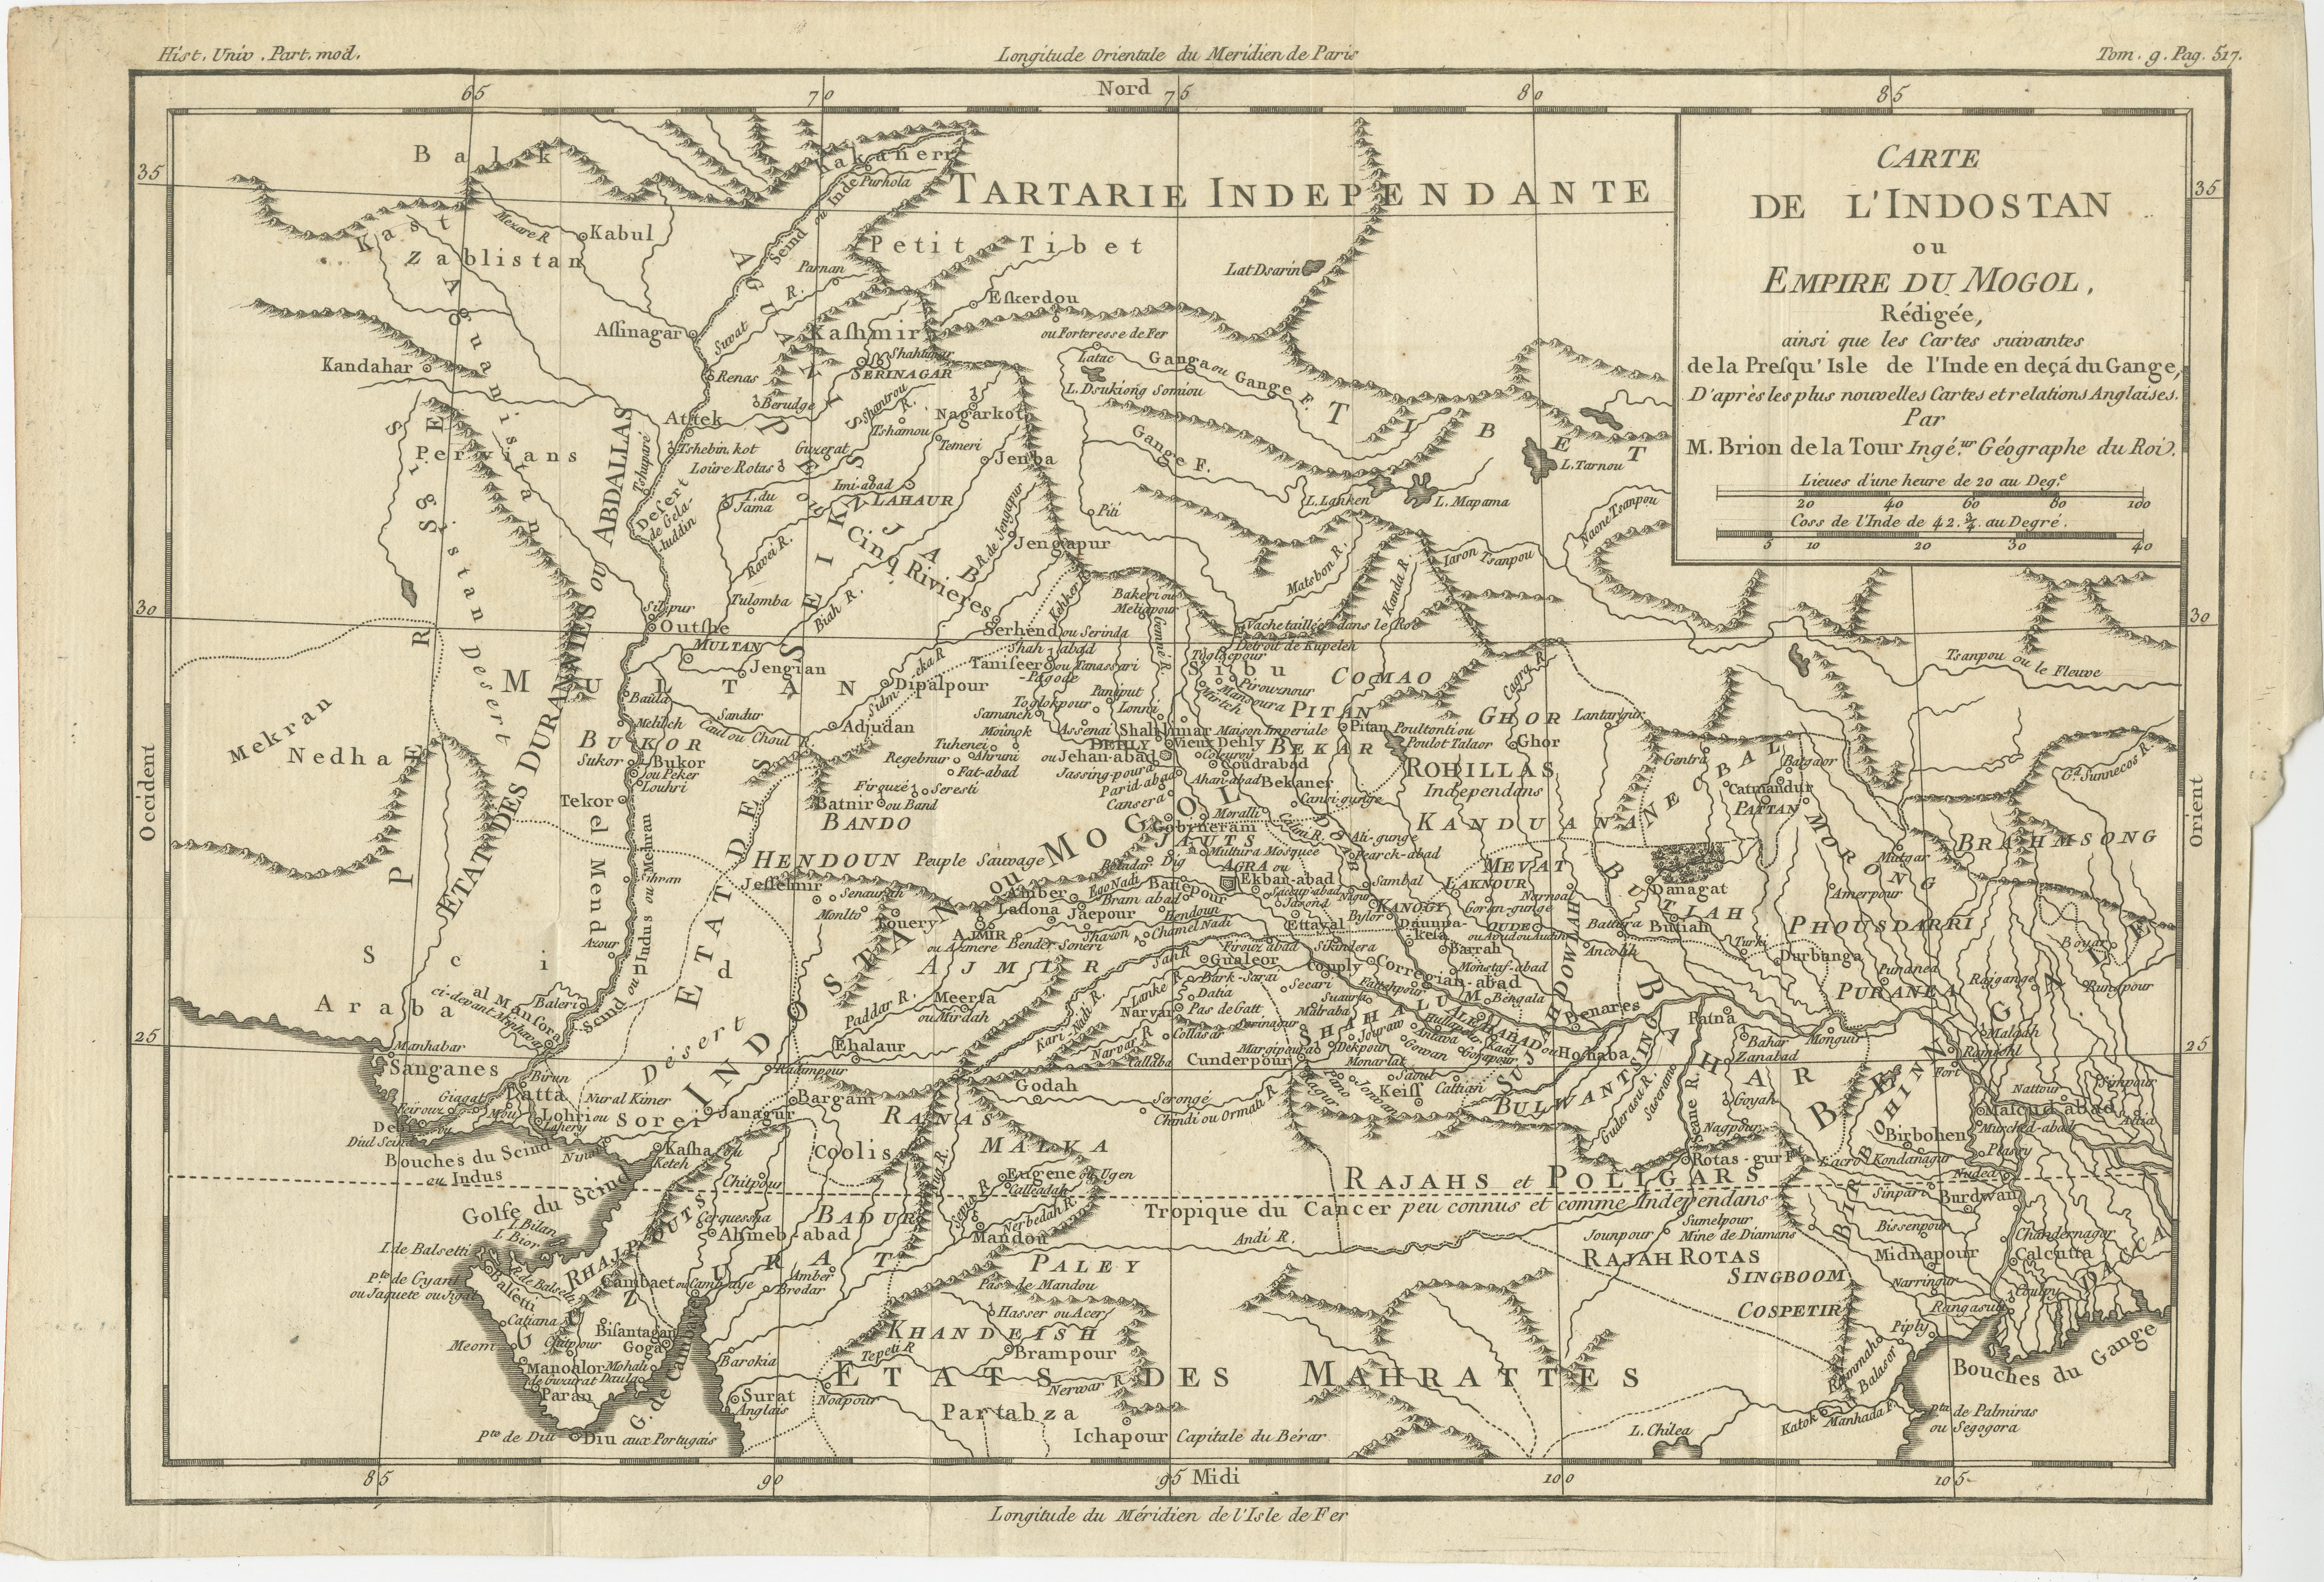 Antique map titled 'Carte de l'Indostan ou Empire du Mogol'. Original antique map of the Mughal Empire by Louis Brion de la Tour. This map originates from 'Histoire universelle, depuis le commencement du monde jusqu'a present; composee en anglois